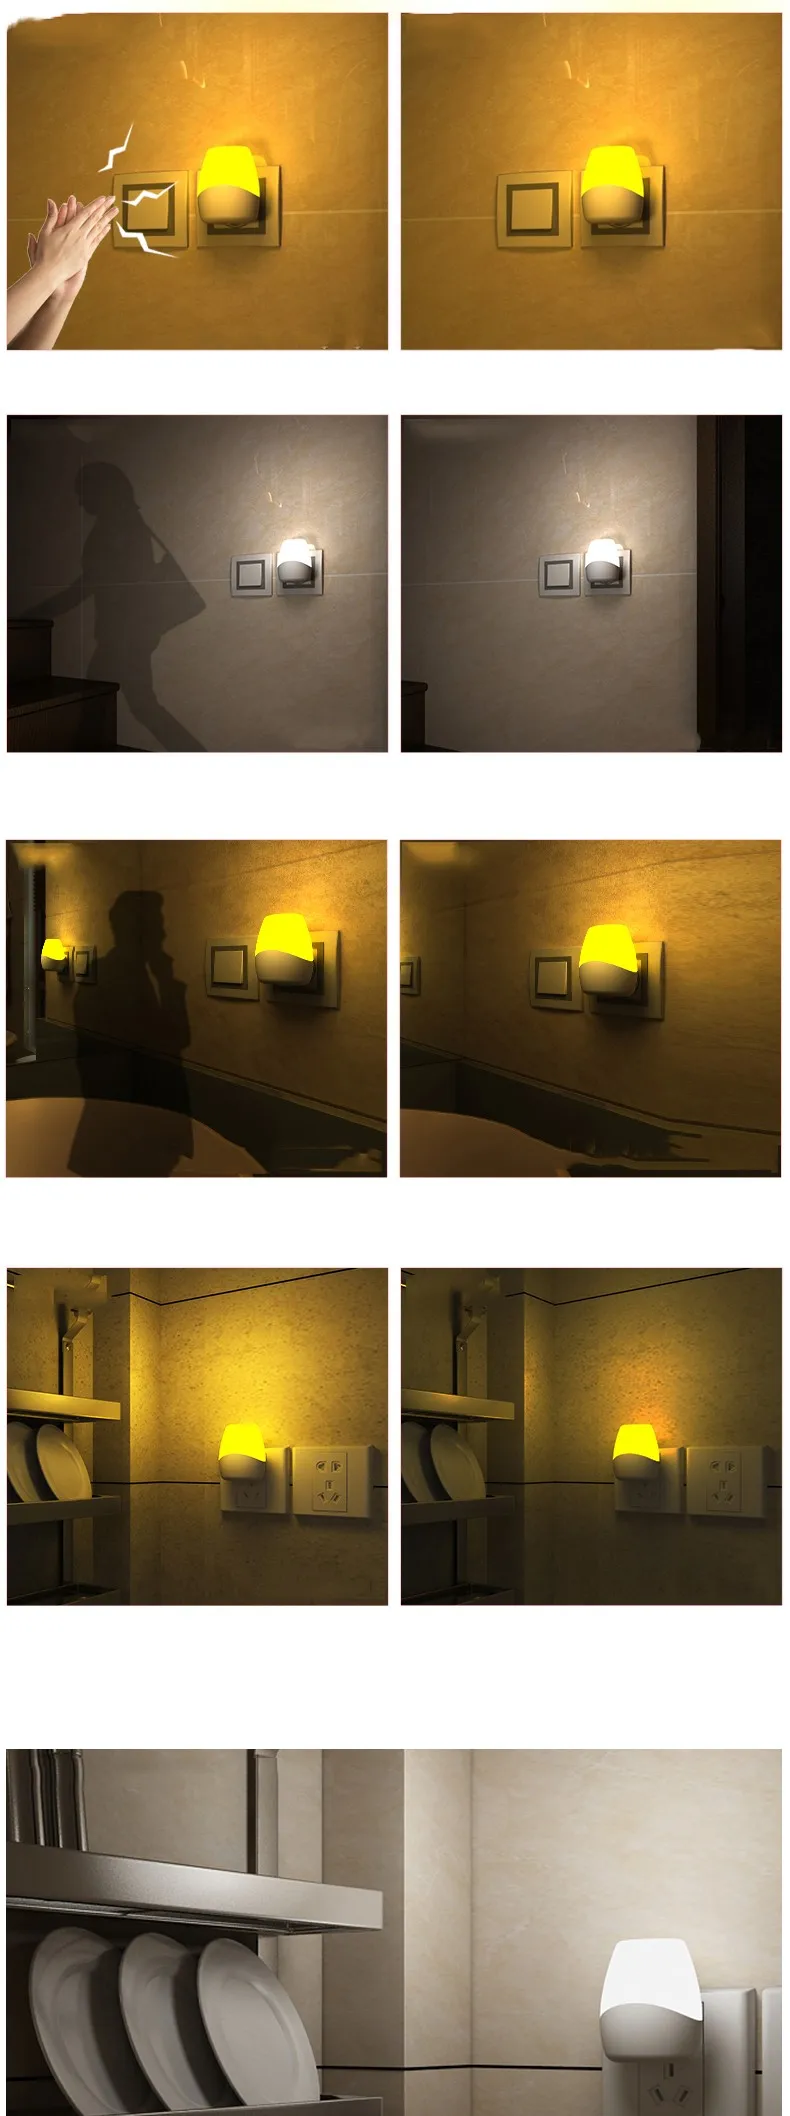 Светодиодный сенсорный светильник TRANSCTEGO, голосовое управление, активированный светодиодный ночник, ночник для детей, Детский Ночной светильник с пультом дистанционного управления